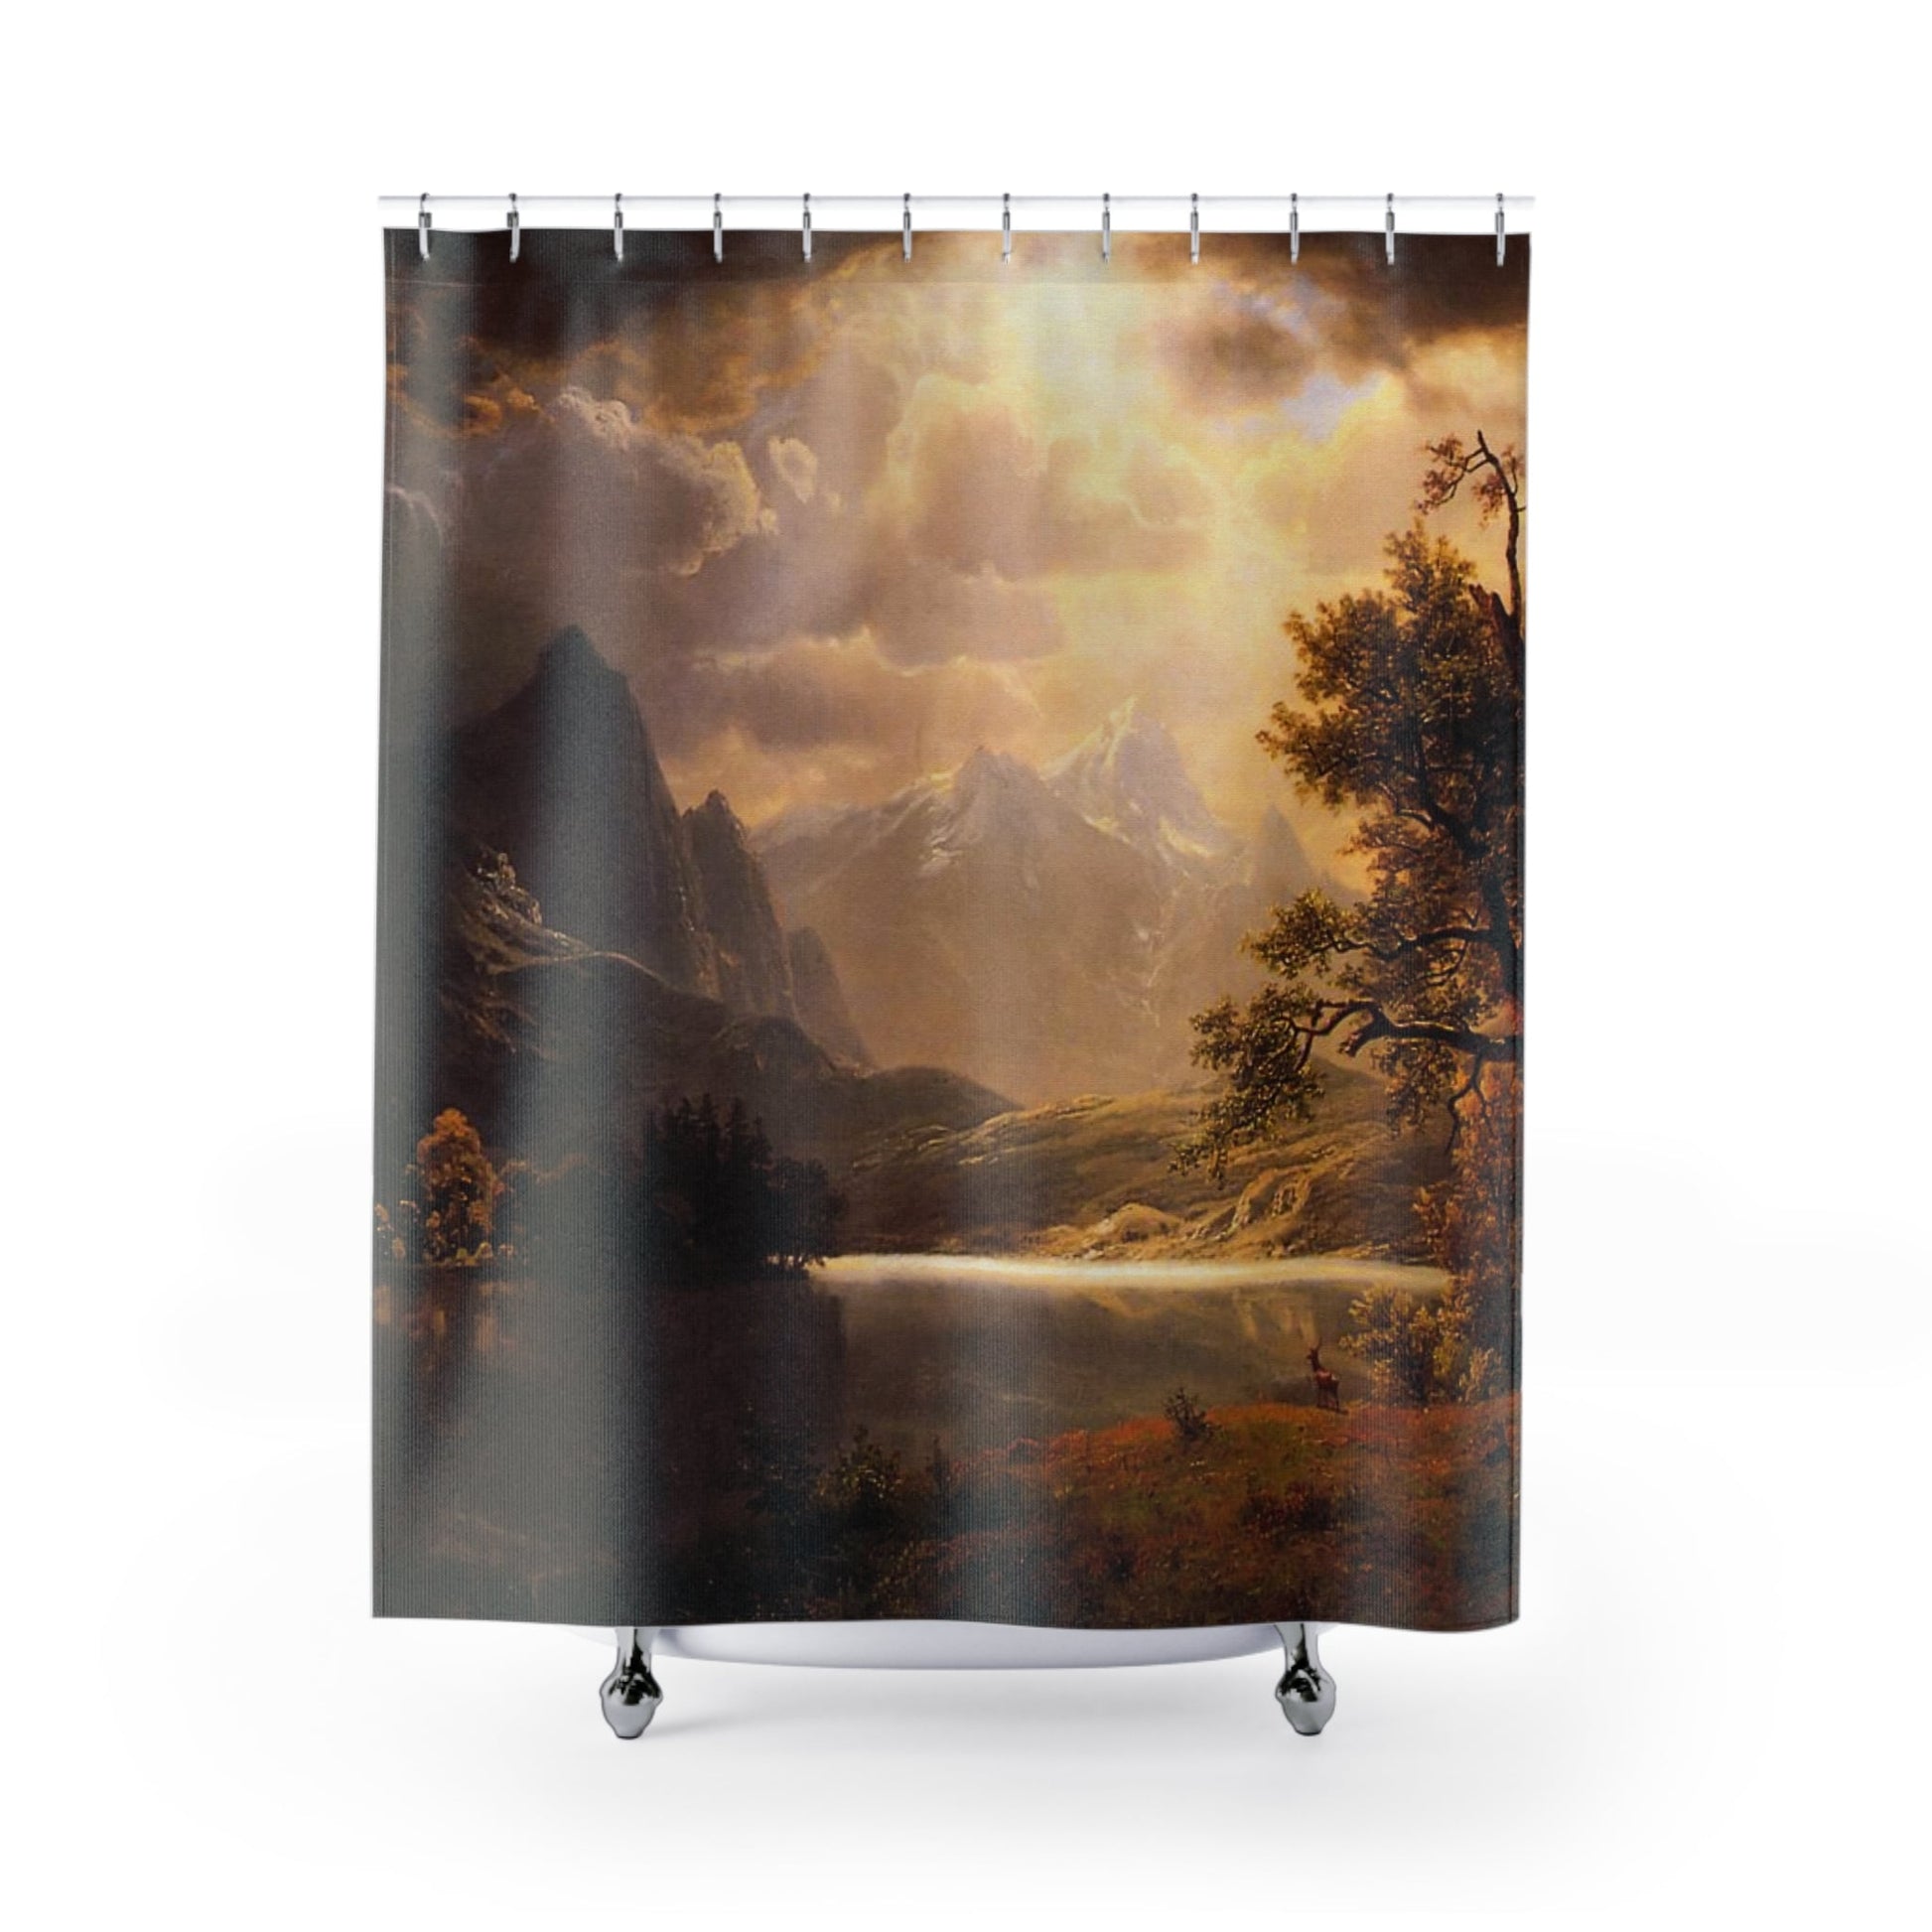 Ethereal Mountains Shower Curtain with Estes Park Colorado design, picturesque bathroom decor showcasing Colorado mountain scenery.